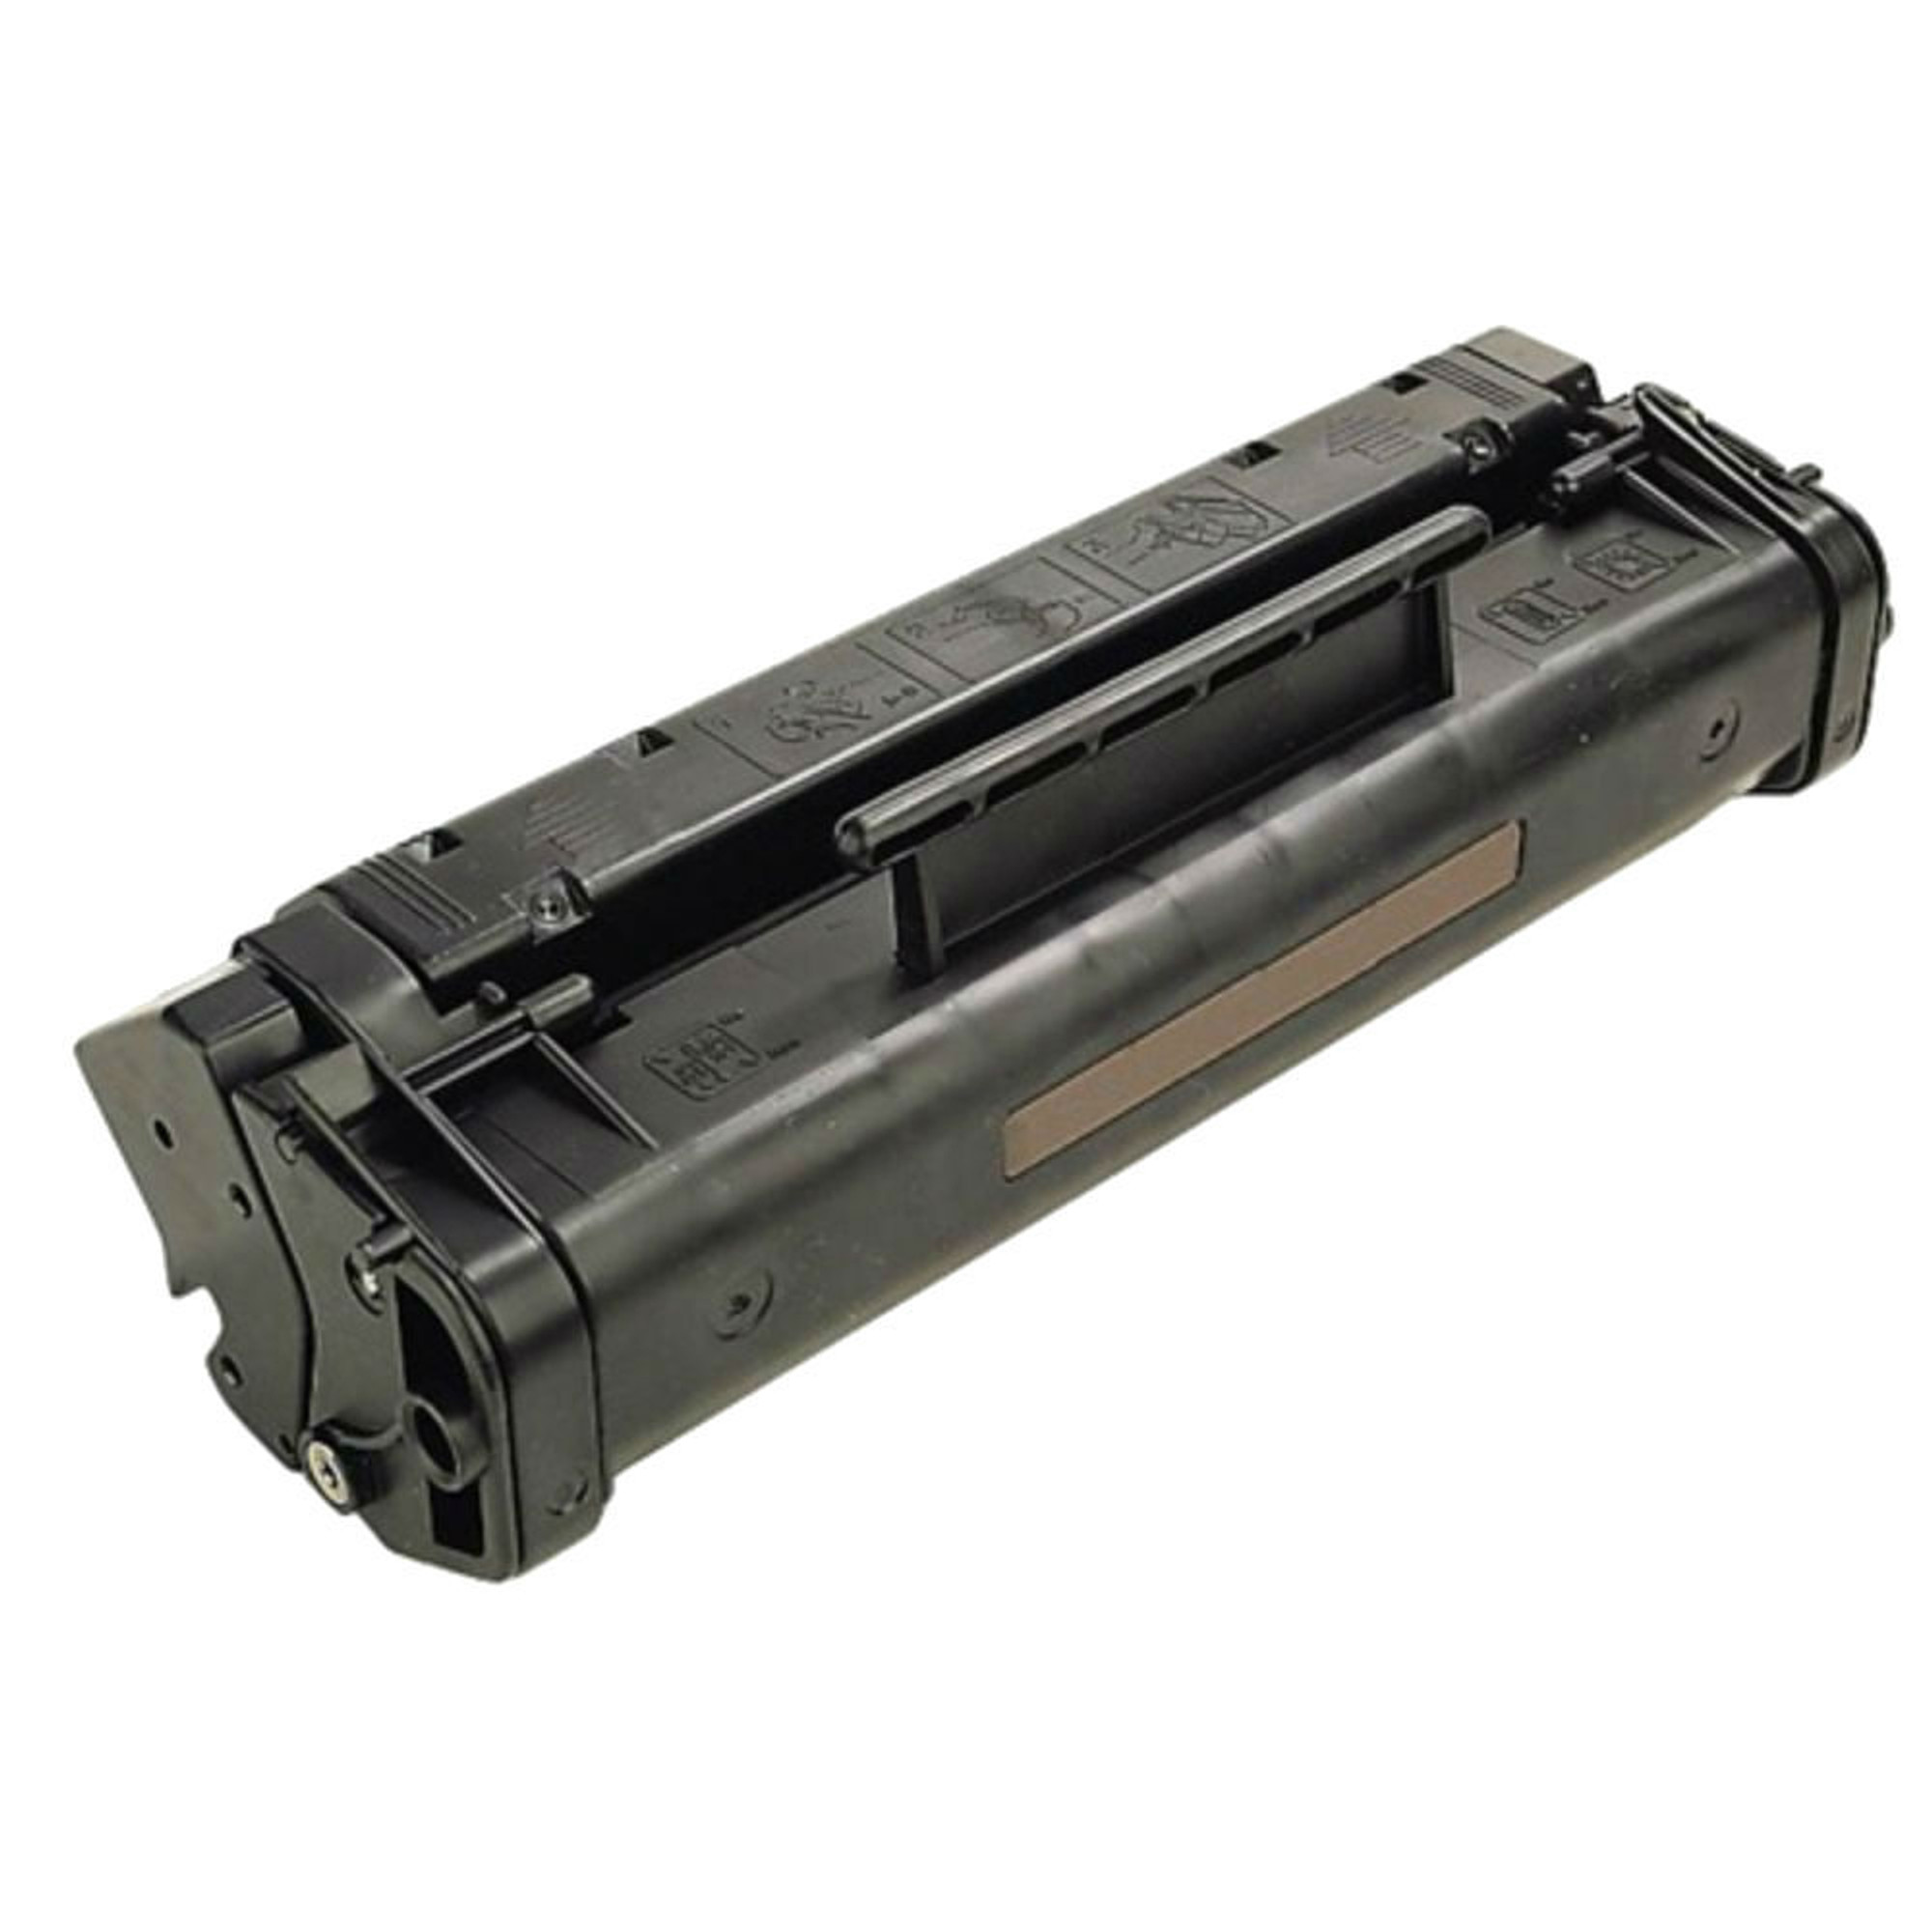 Black Toner for HP Laserjet 5L, 3100/3150 printer,